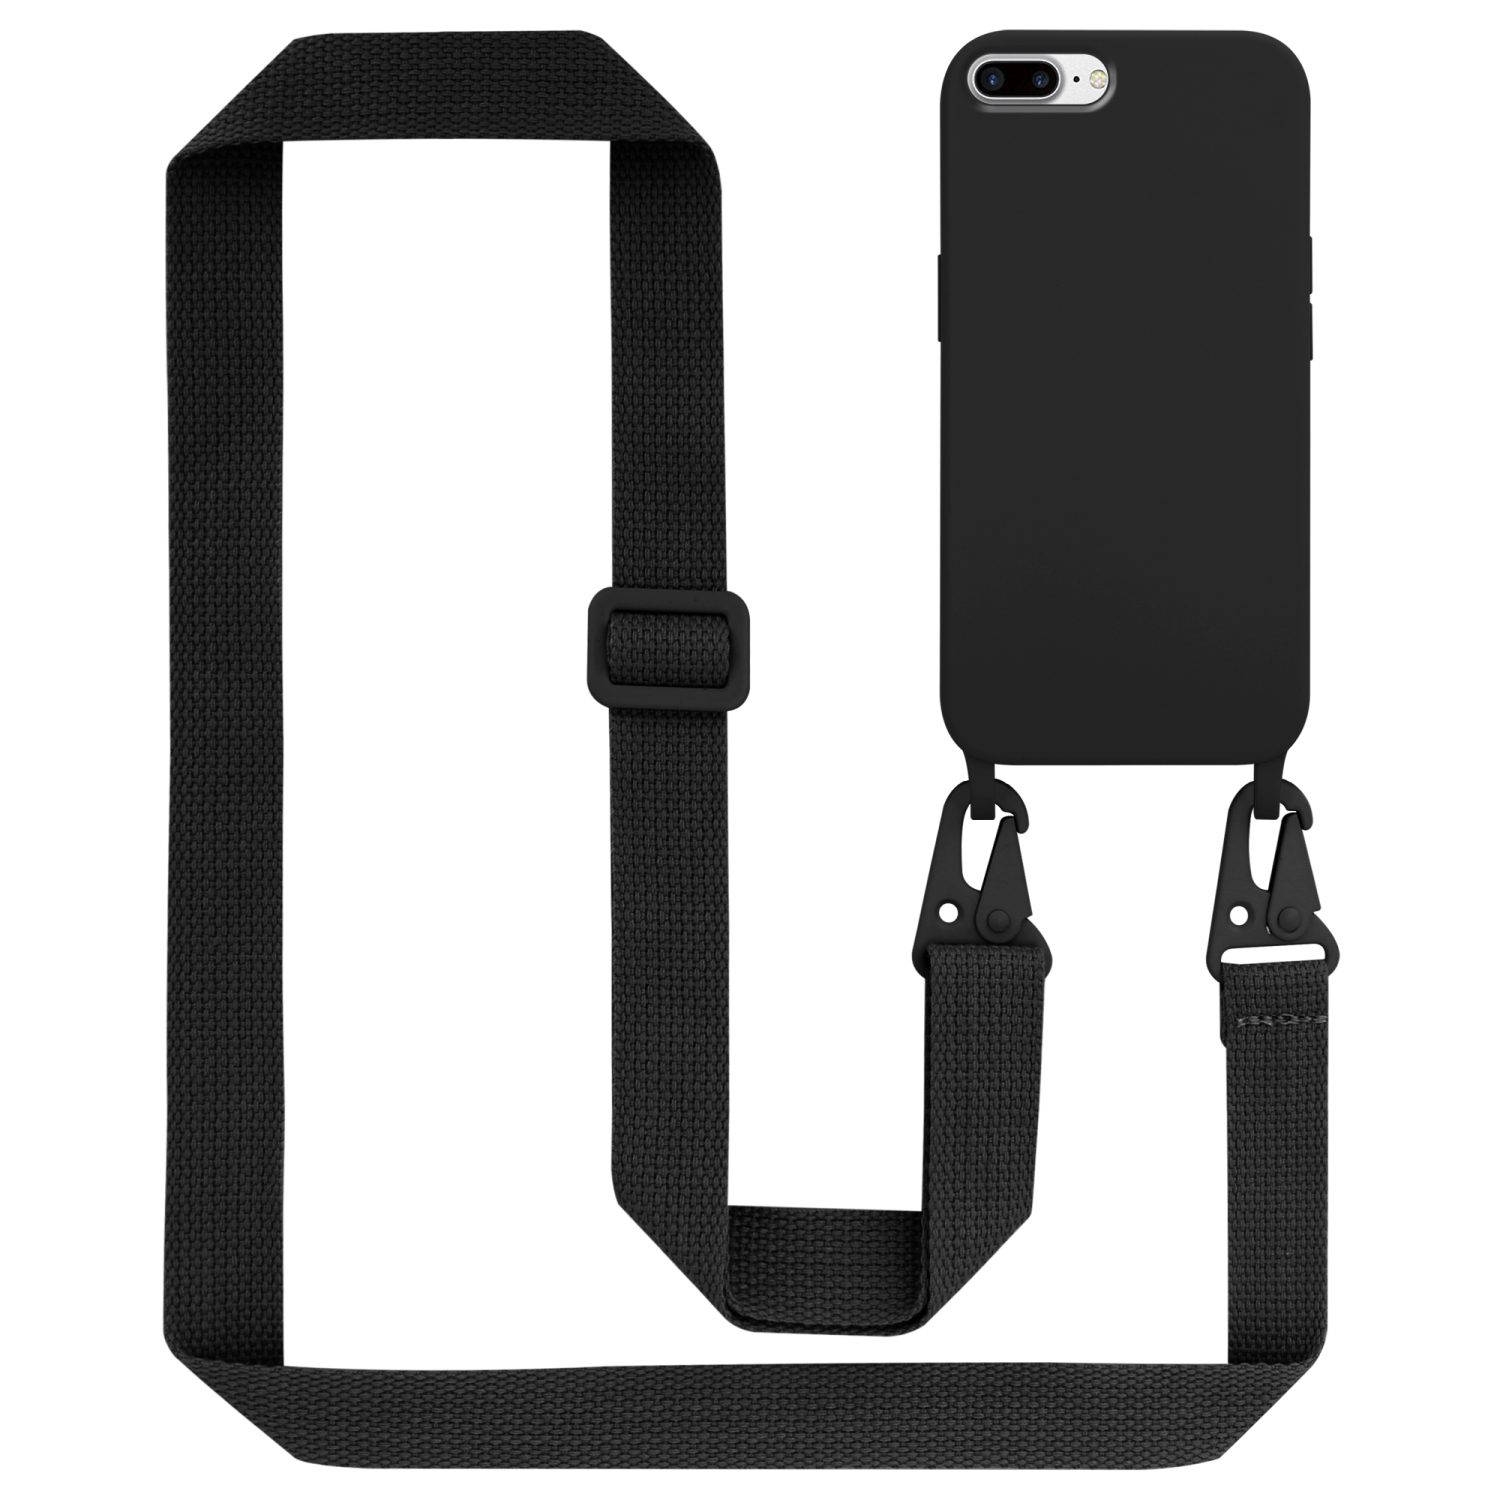 Cadorabo Mobiele telefoon ketting voor Apple iPhone 7 PLUS / 7S PLUS / 8 PLUS in LIQUID ZWART - Silicone beschermhoes met lengte verstelbare koord riem